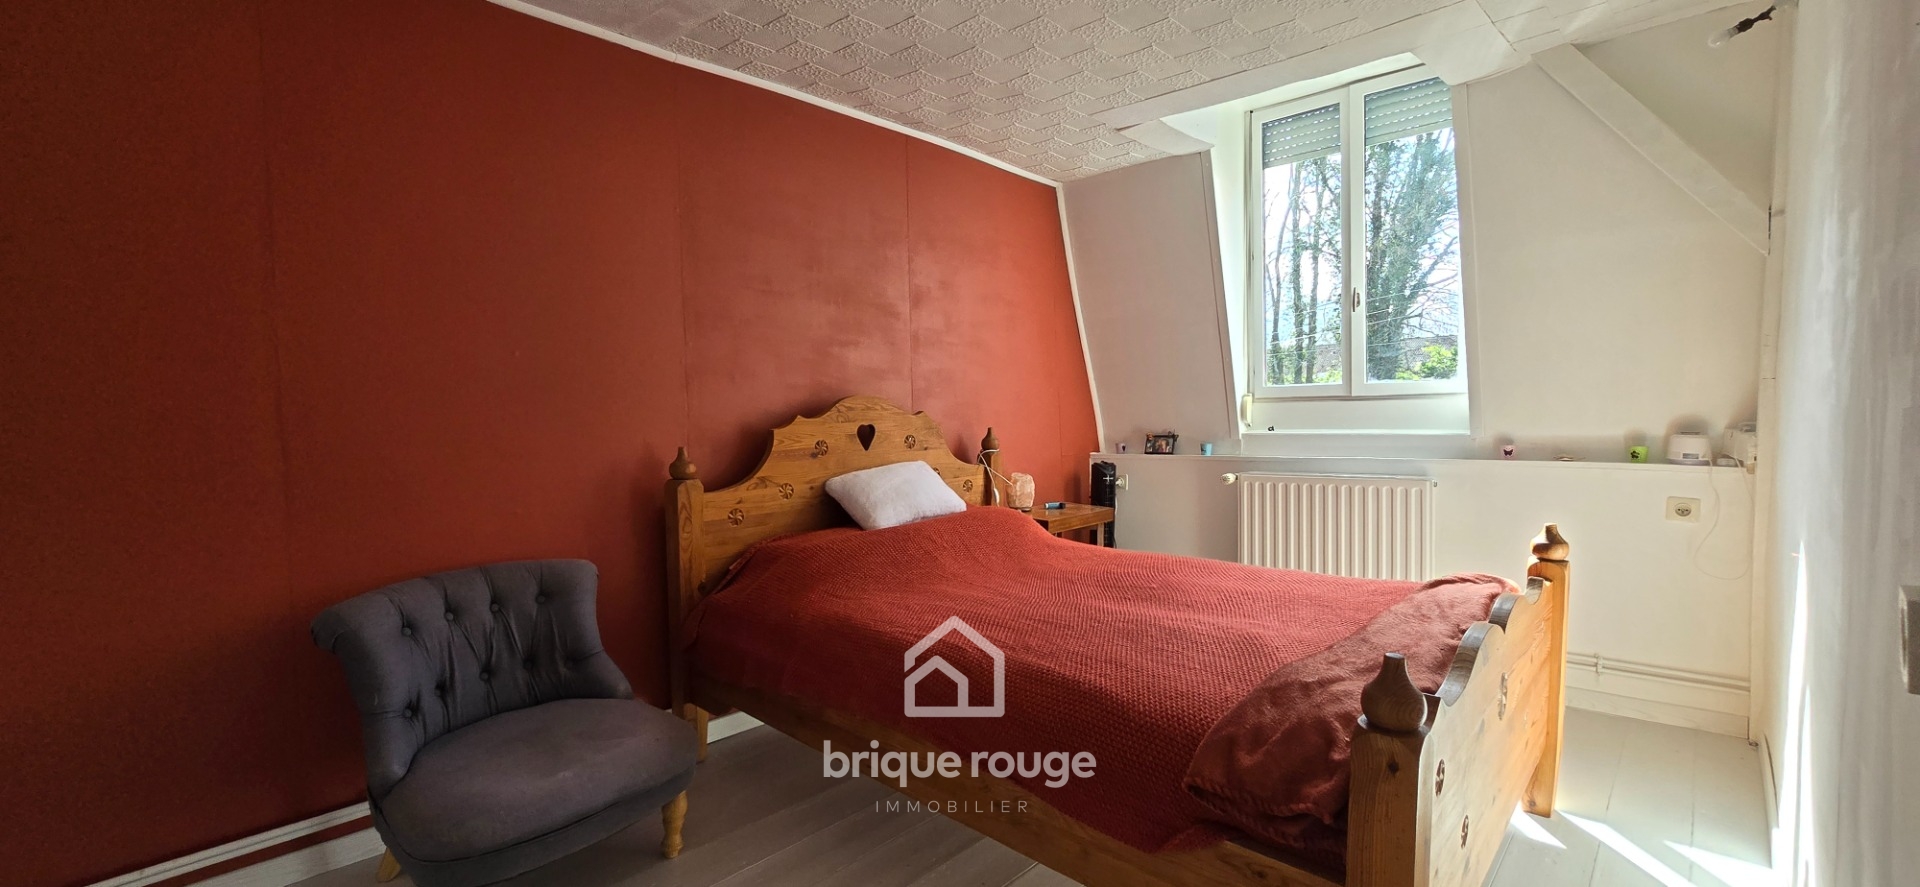 Ascq village flamande semi individuelle 4 chambres Photo 5 - Brique Rouge Immobilier